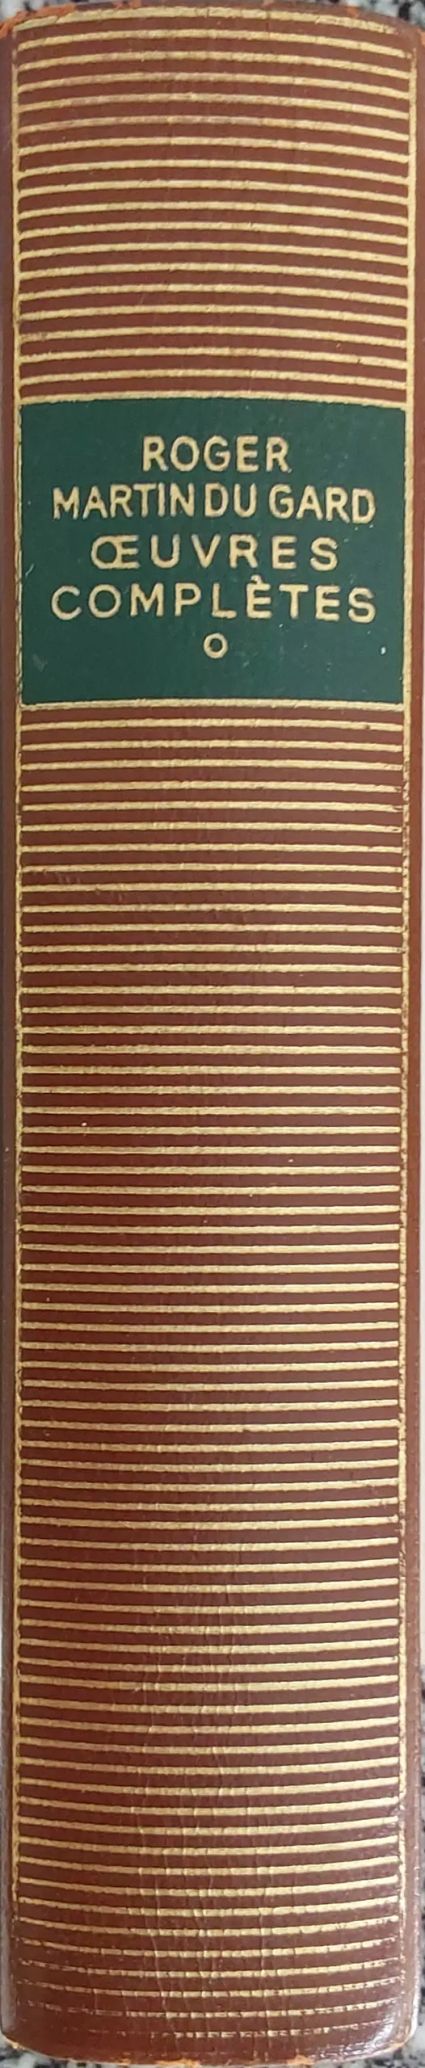 Volumes 113 de Roger Martin du Gard dans la Bibliothèque de la Pléiade.